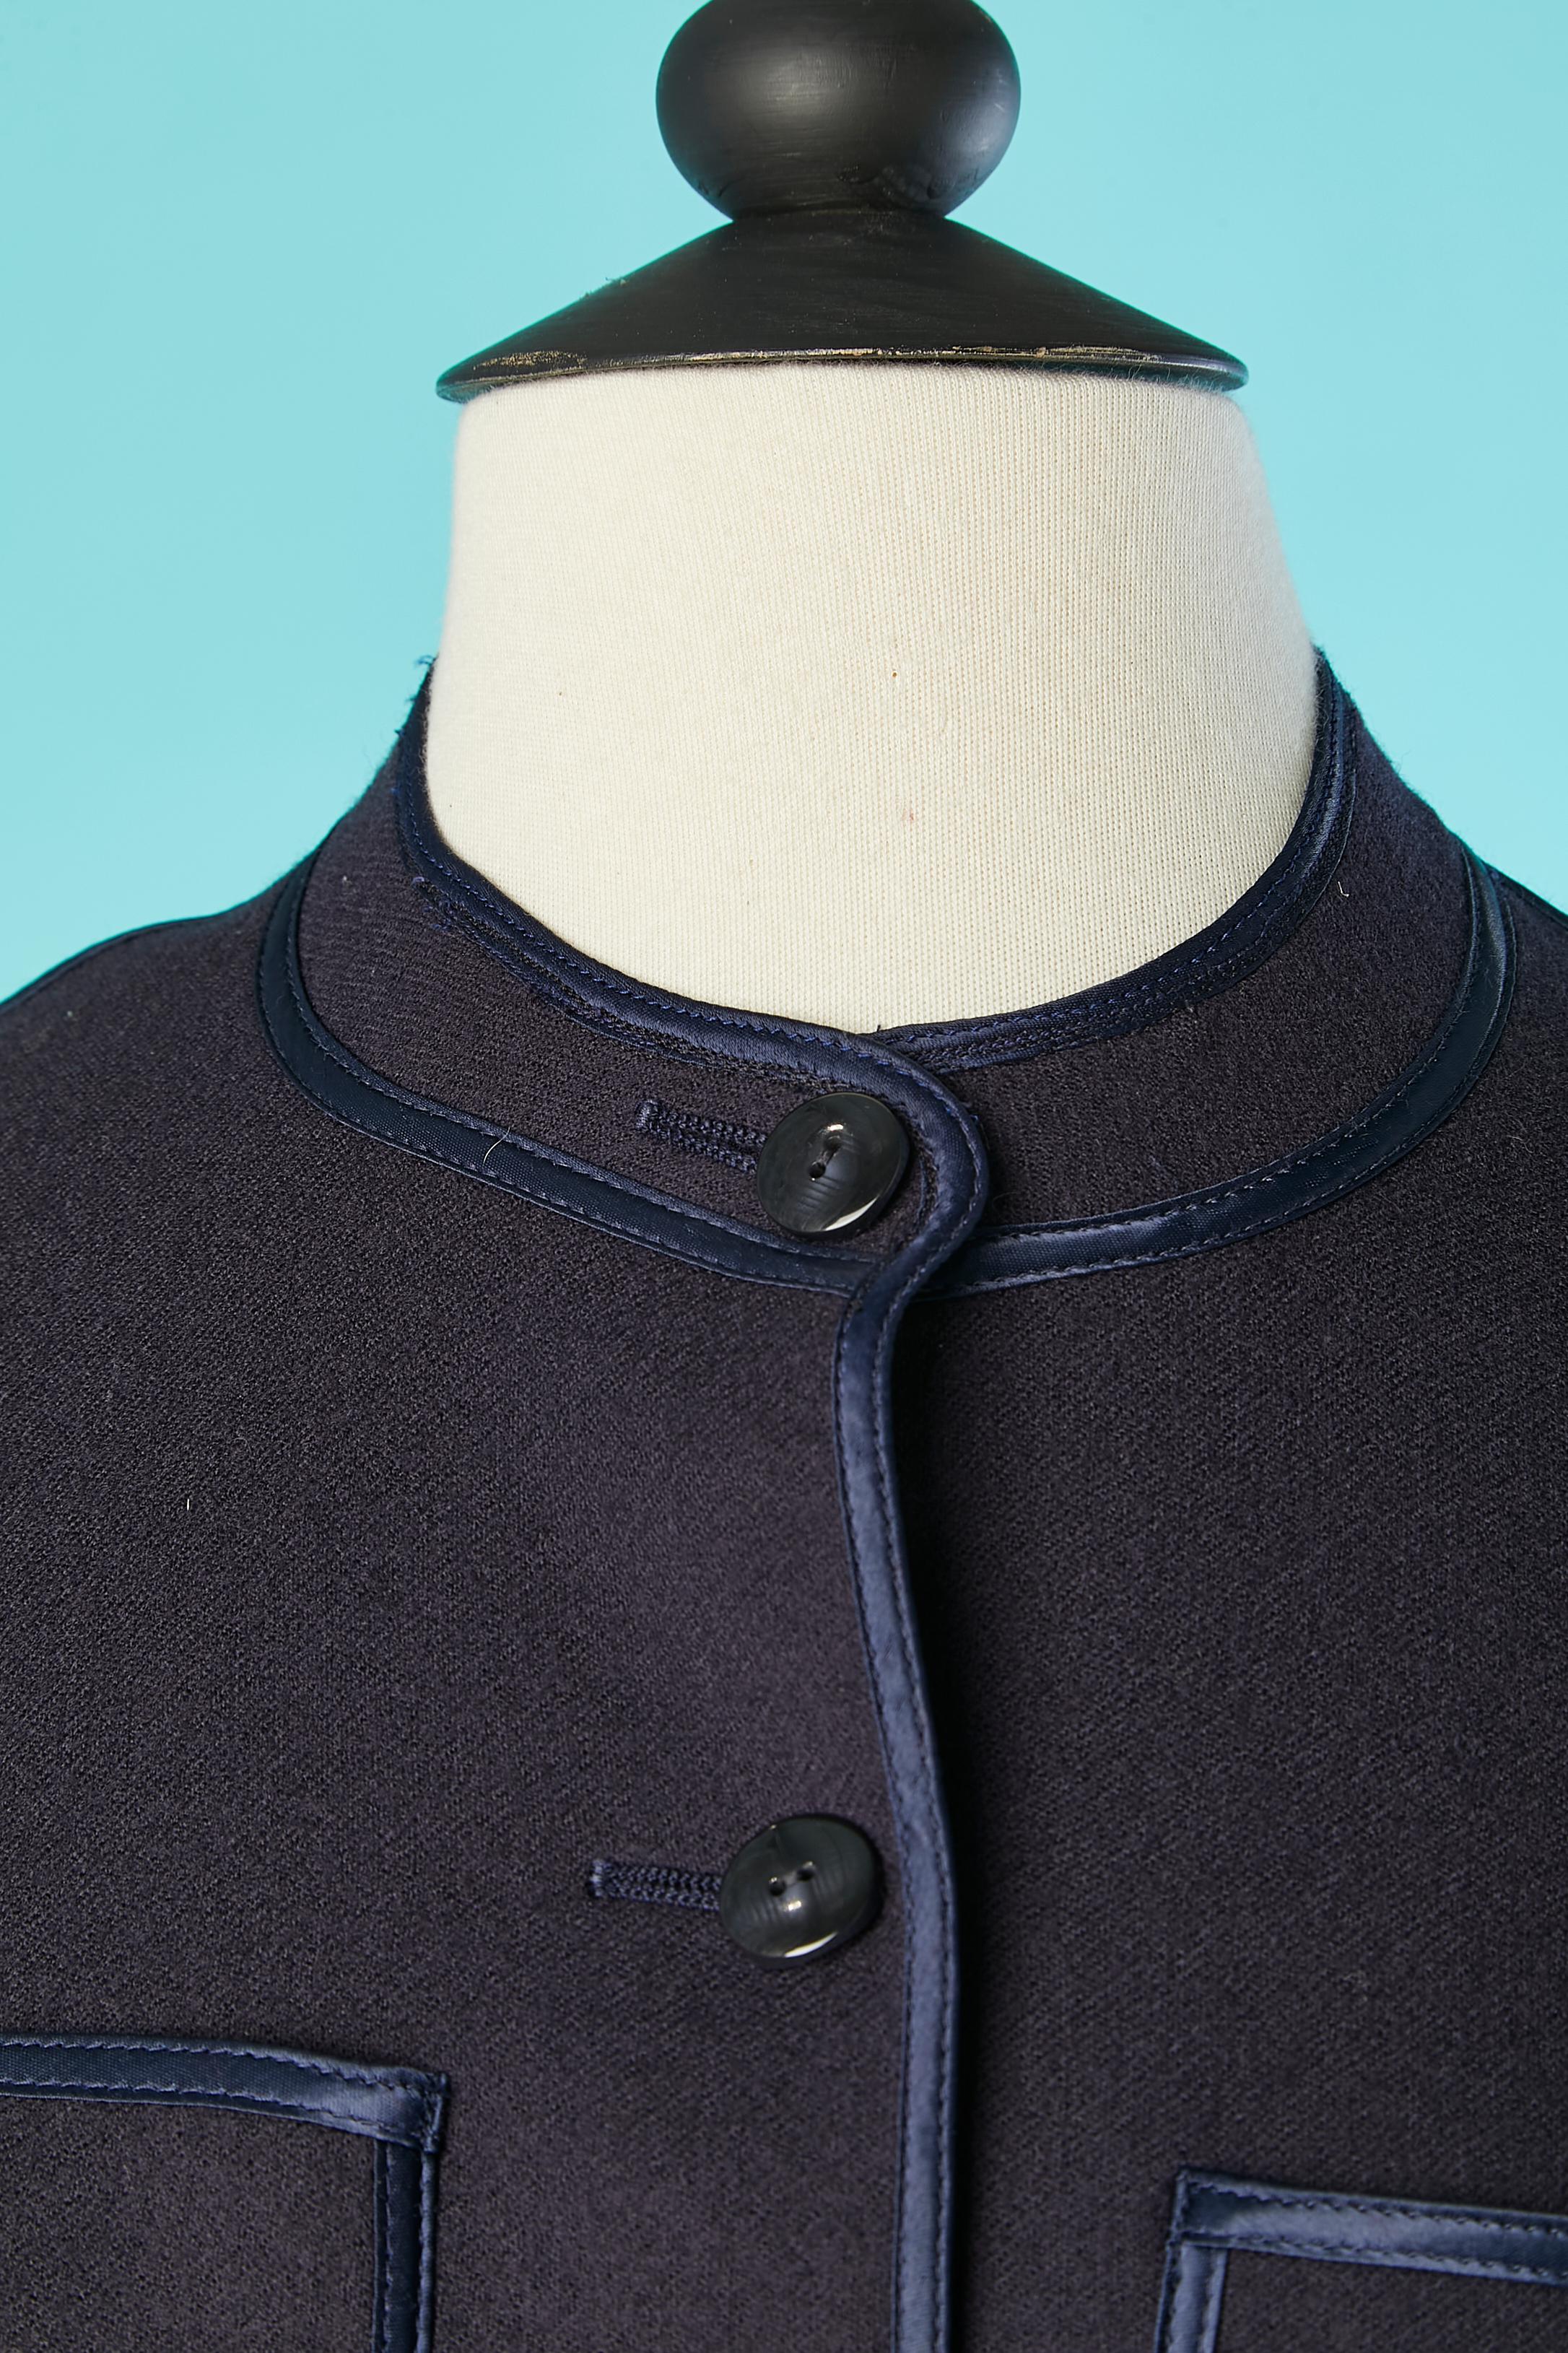 Marineblaue kurze Jacke aus Wolle mit Satinband-Paspelierung. Kein Futter. 
GRÖSSE 38 (Fr) 6 (US)